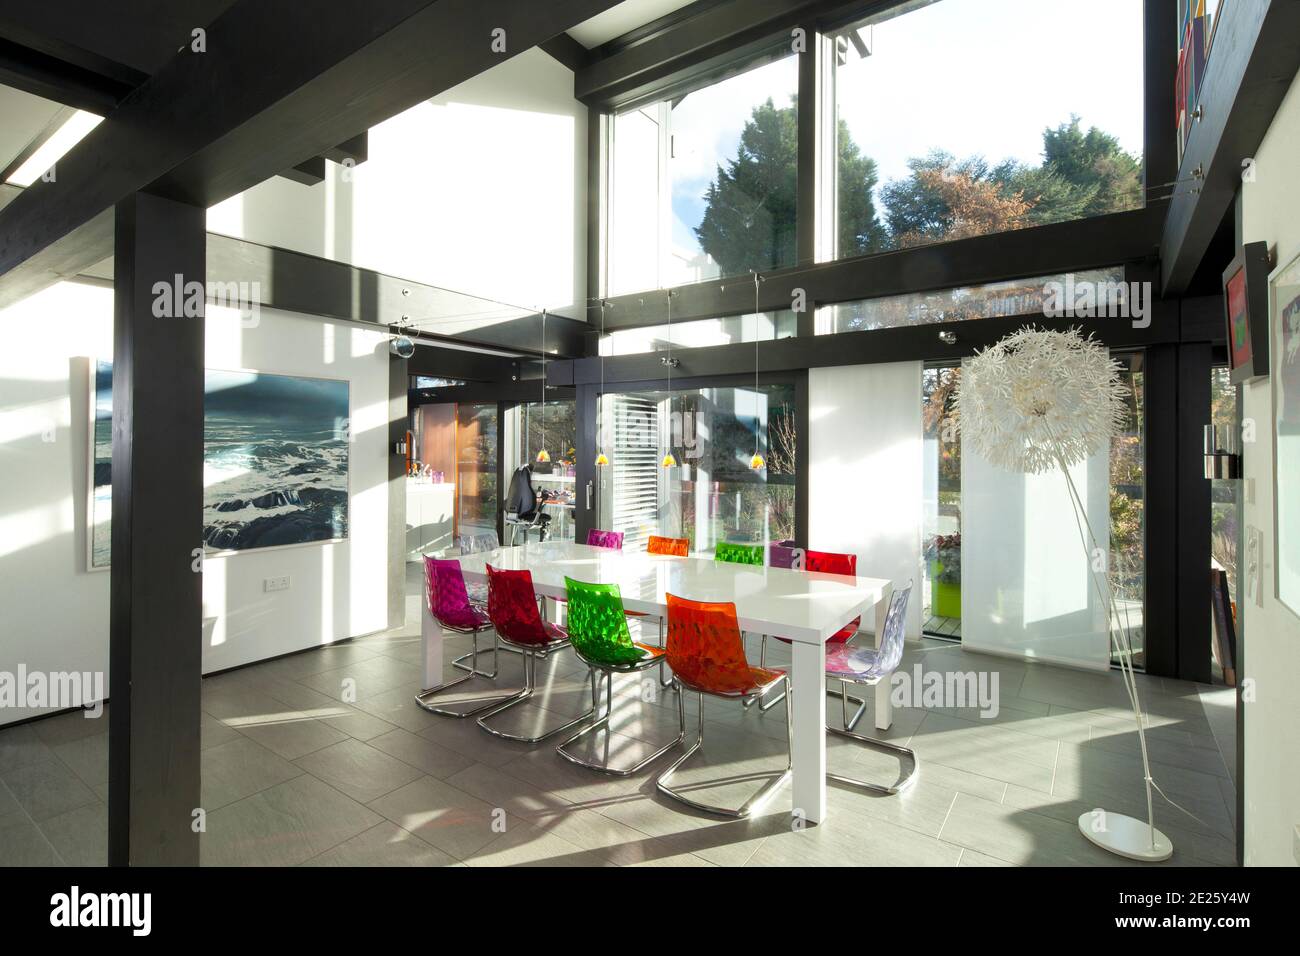 Salle à manger dans huf haus avec chaises colorées en plein soleil Banque D'Images